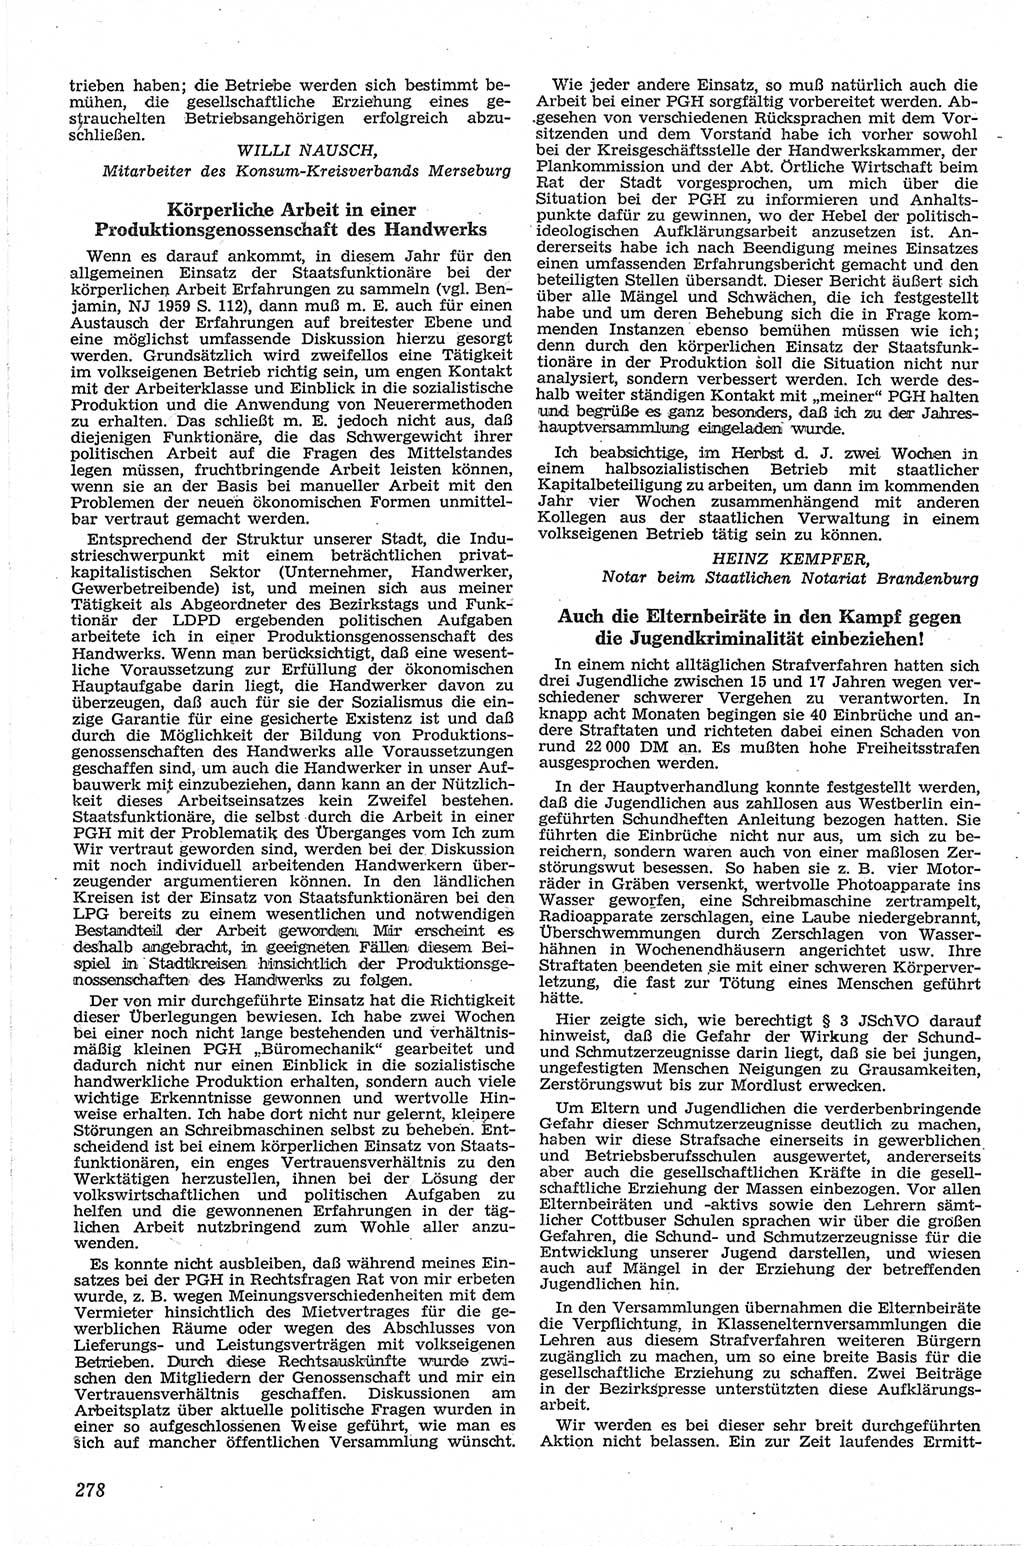 Neue Justiz (NJ), Zeitschrift für Recht und Rechtswissenschaft [Deutsche Demokratische Republik (DDR)], 13. Jahrgang 1959, Seite 278 (NJ DDR 1959, S. 278)